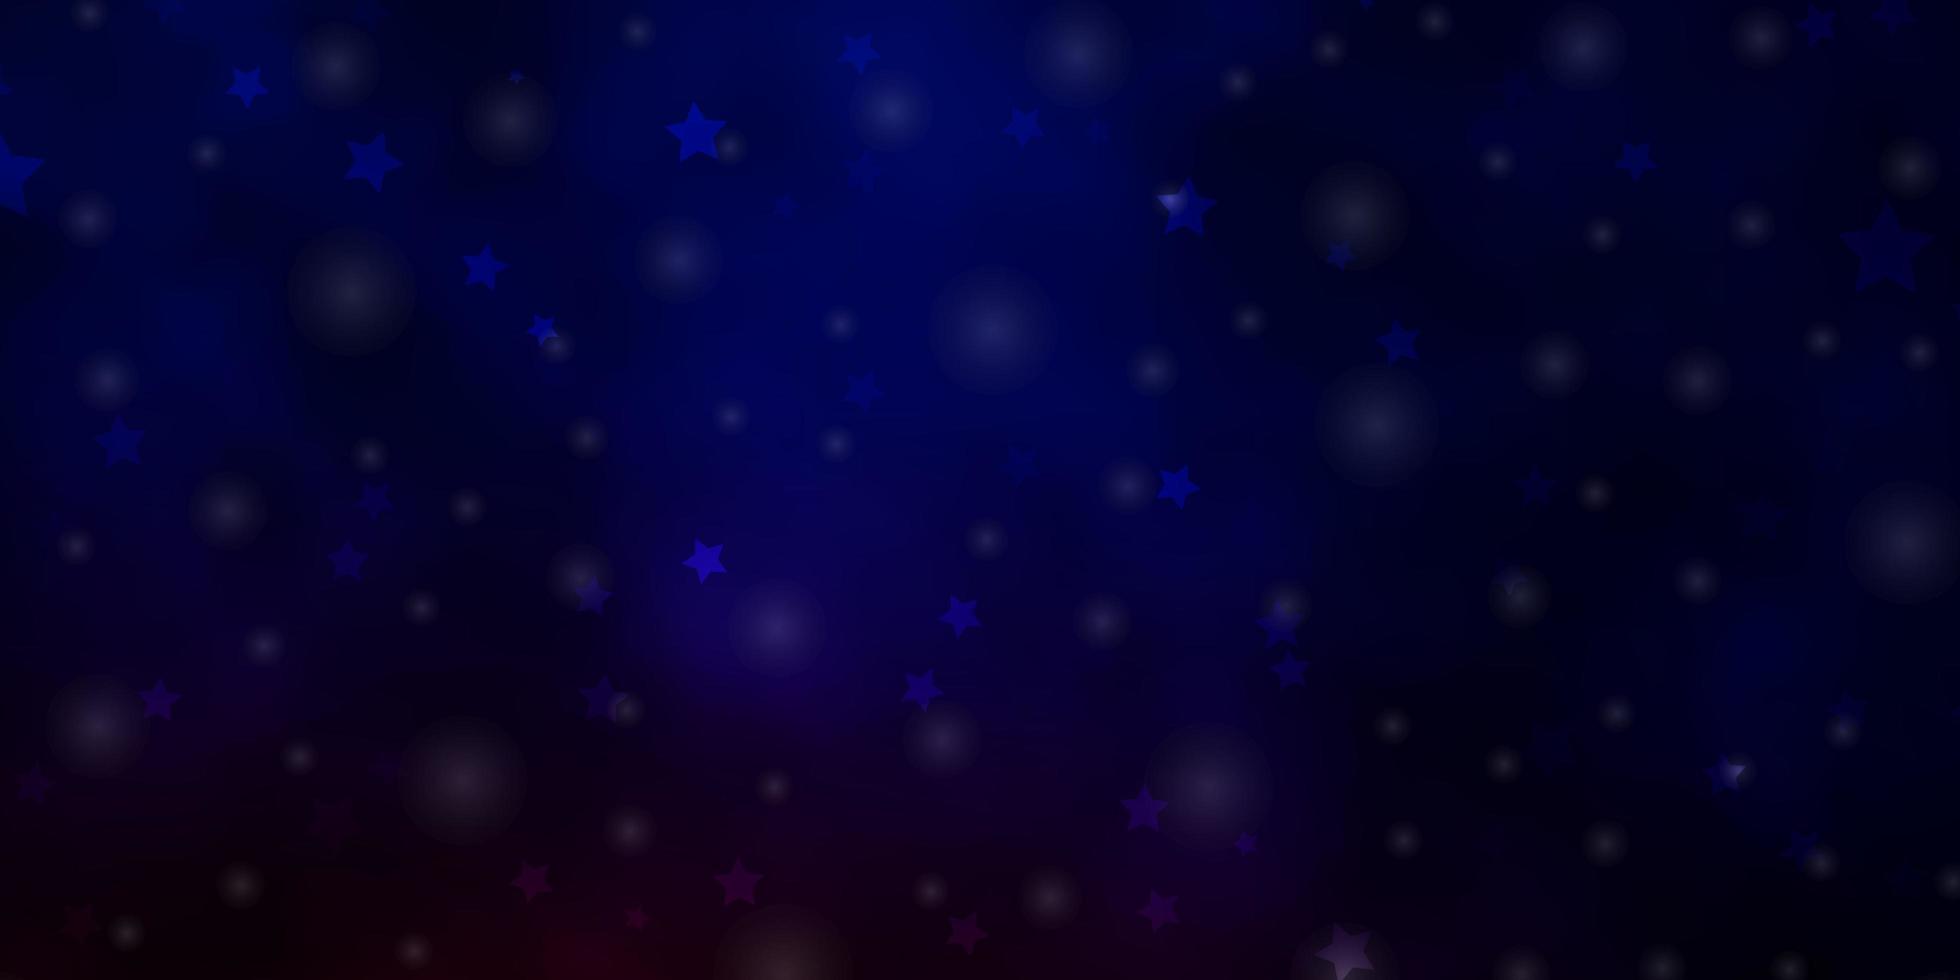 layout de vetor de azul escuro e vermelho com estrelas brilhantes.